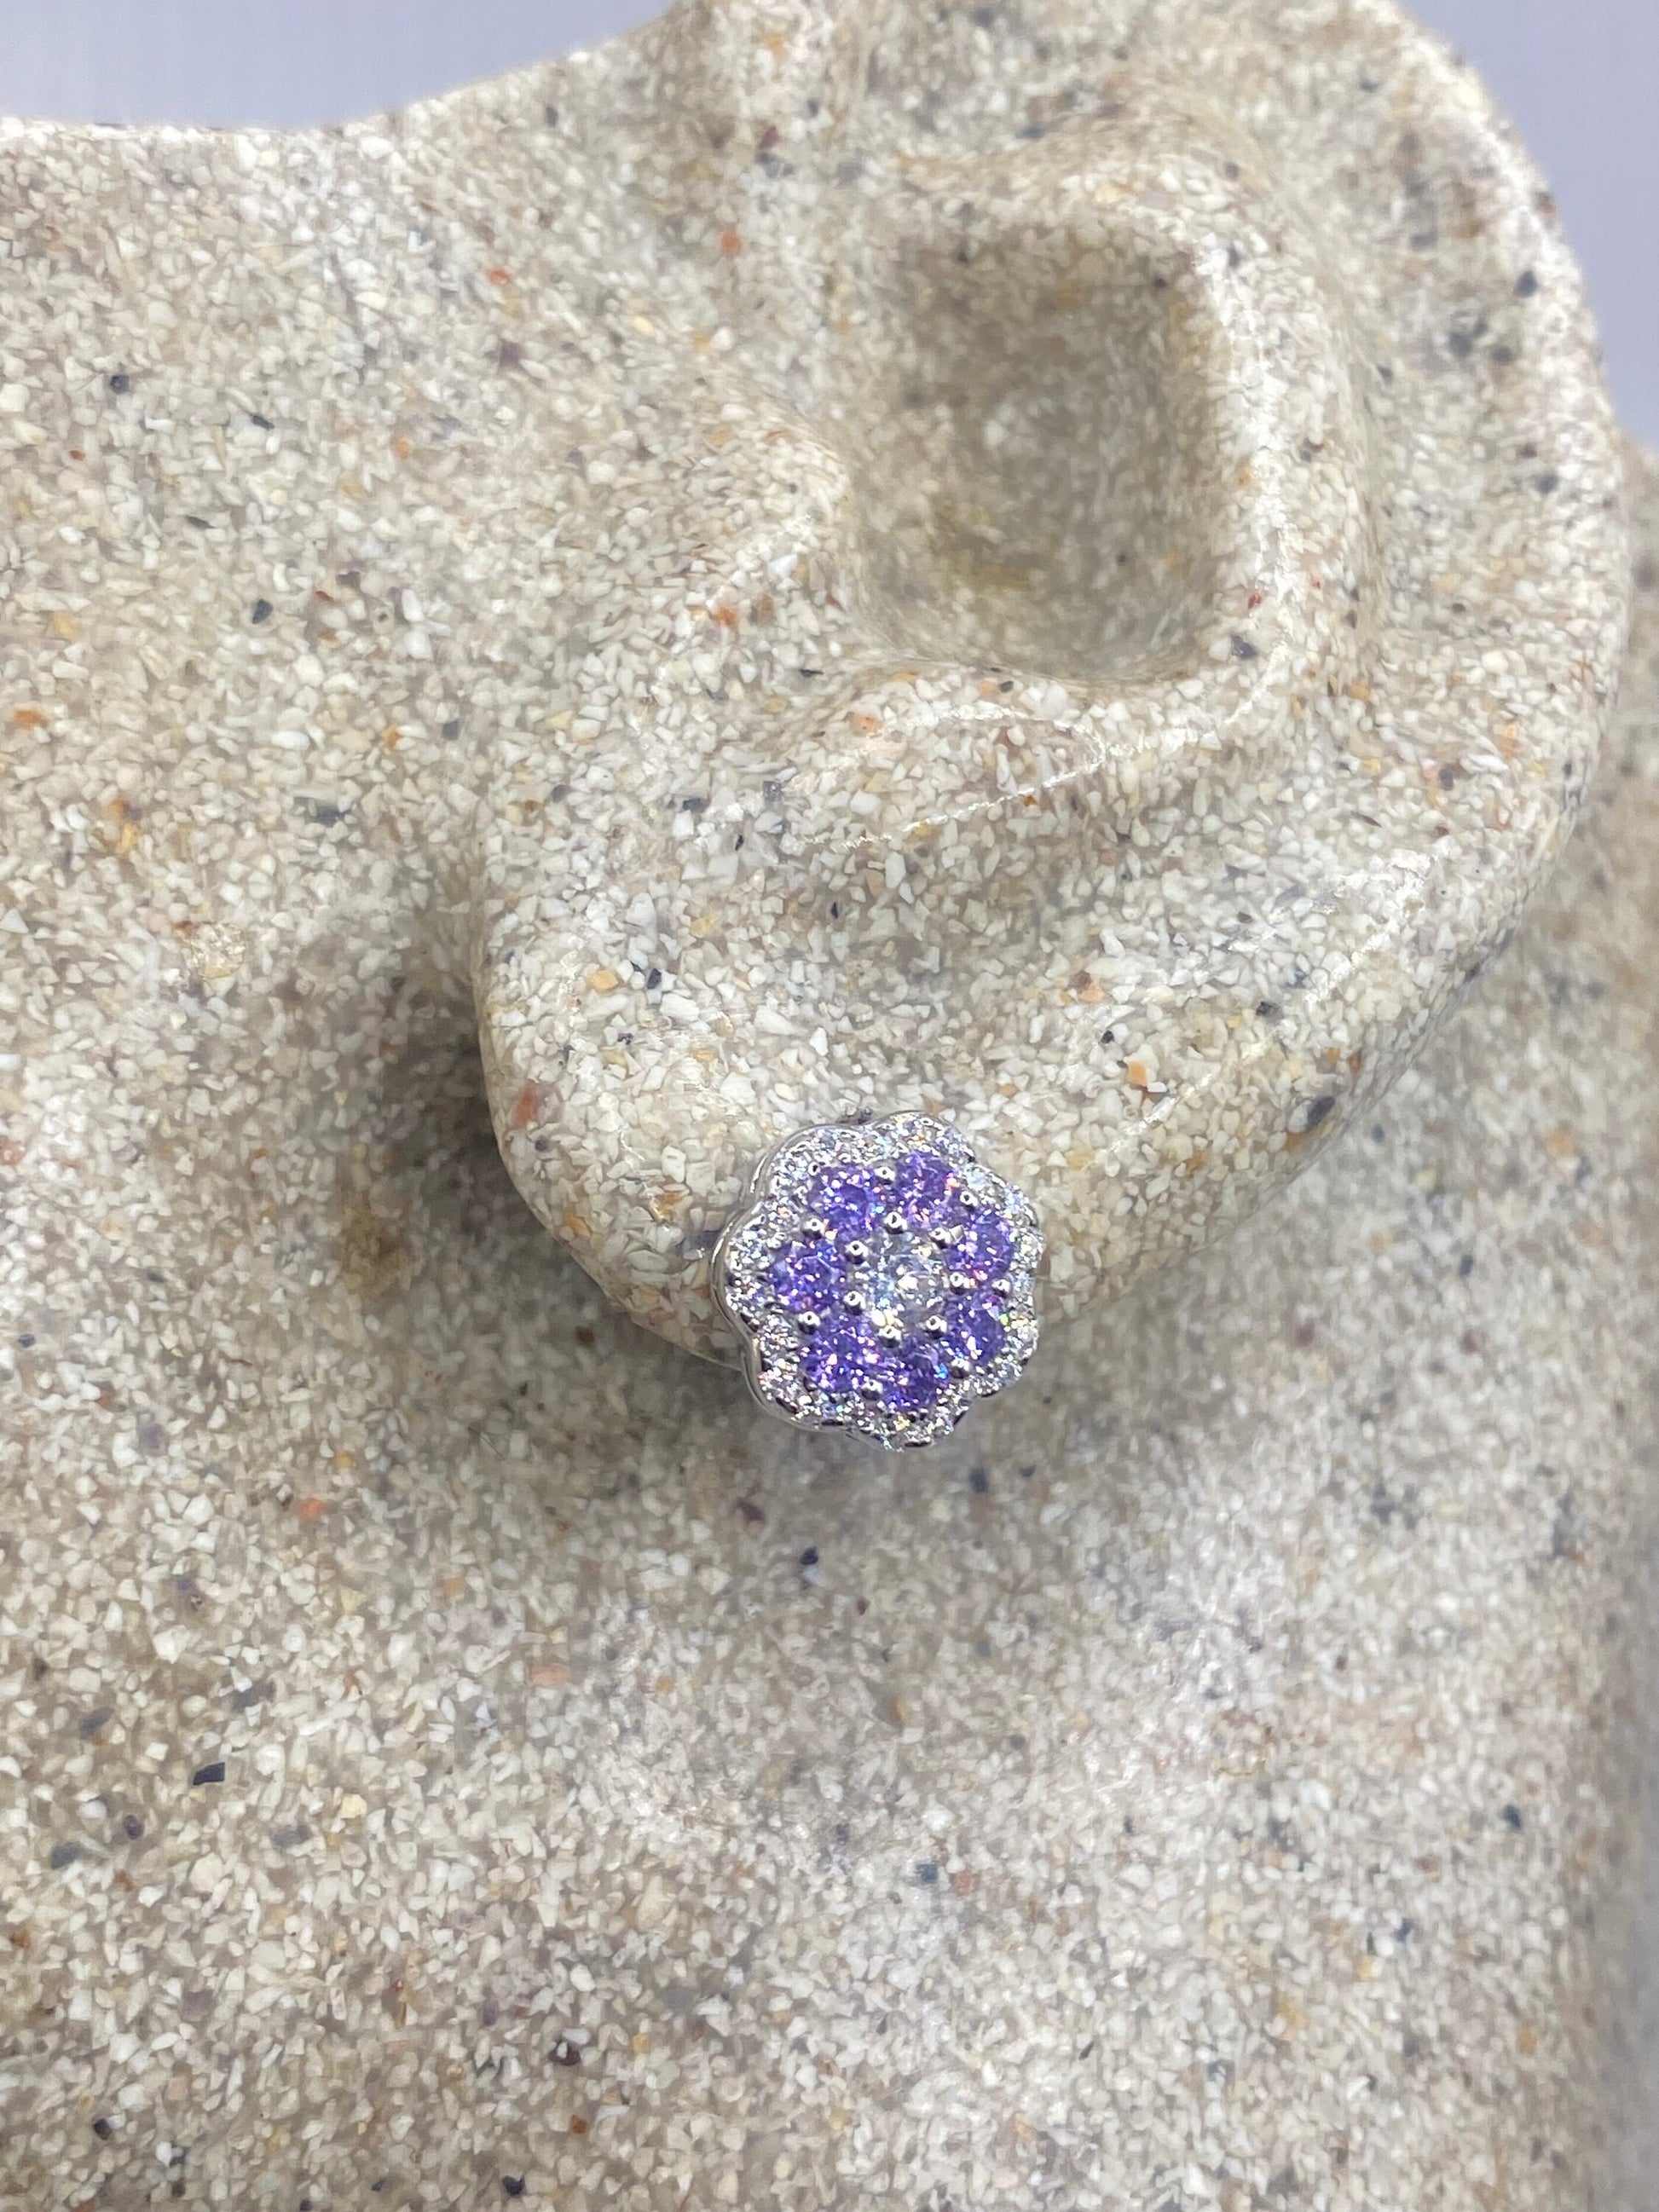 Vintage Amethyst Earrings 925 Sterling Silver Purple Stud Button